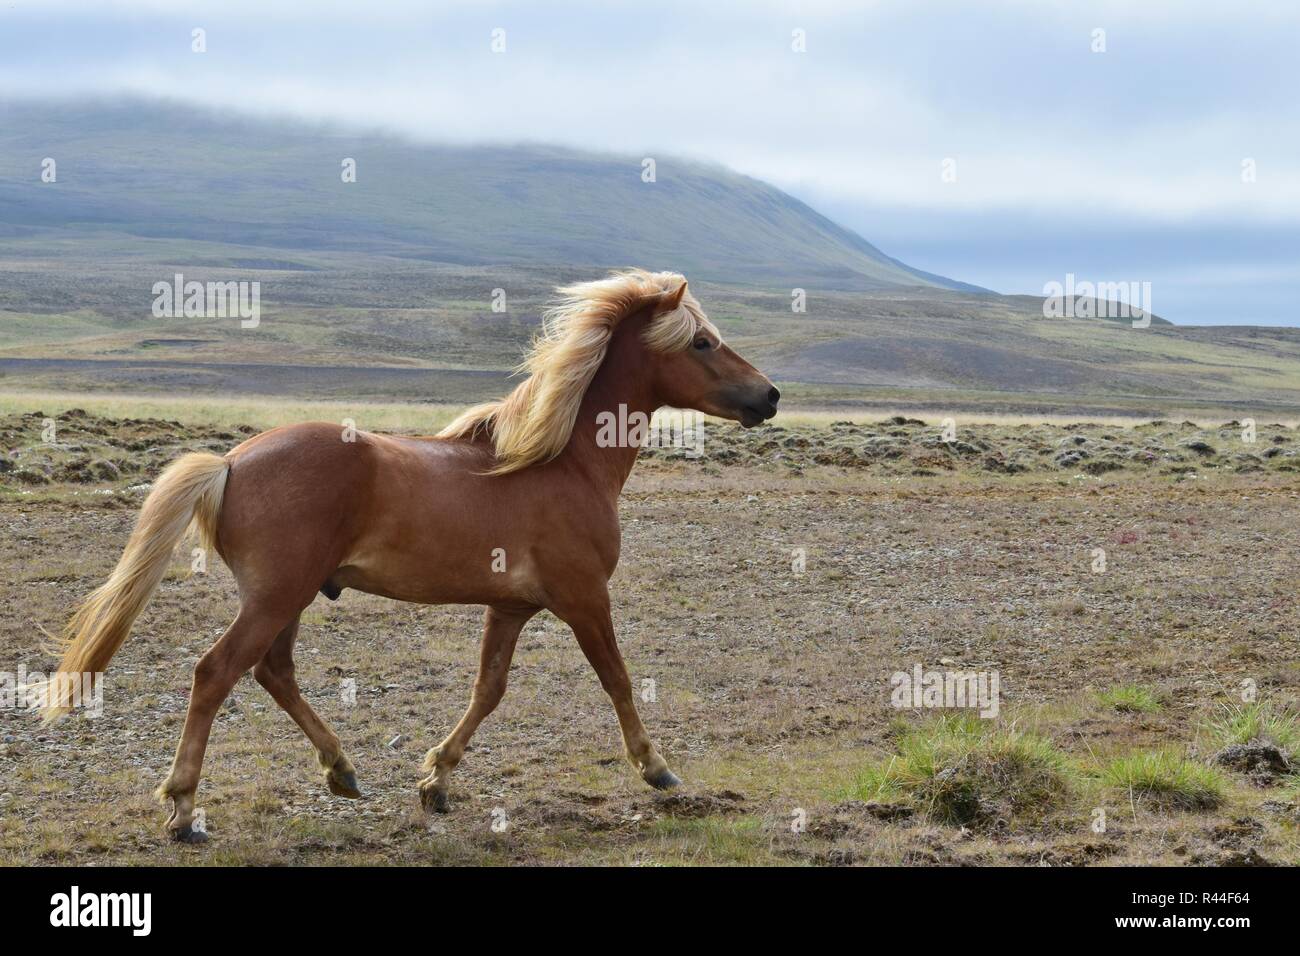 Schönen isländischen Hengst im Trab, mit isländischen Landschaft im Hintergrund. Flaxen Kastanie. Stockfoto